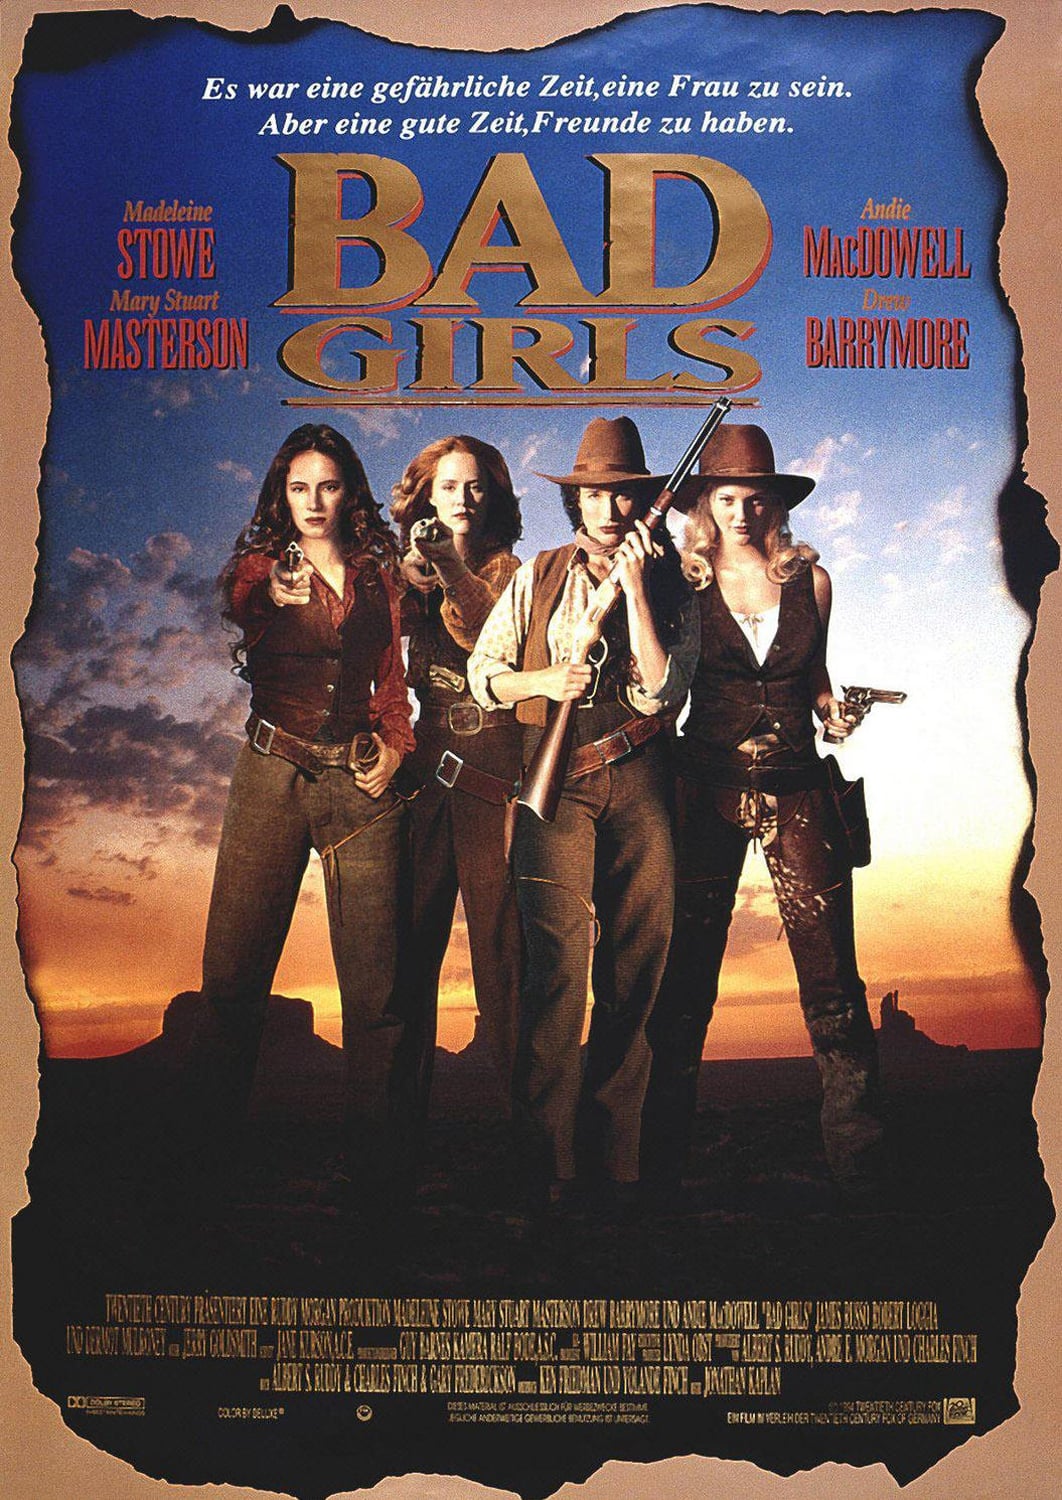 Plakat von "Bad Girls"